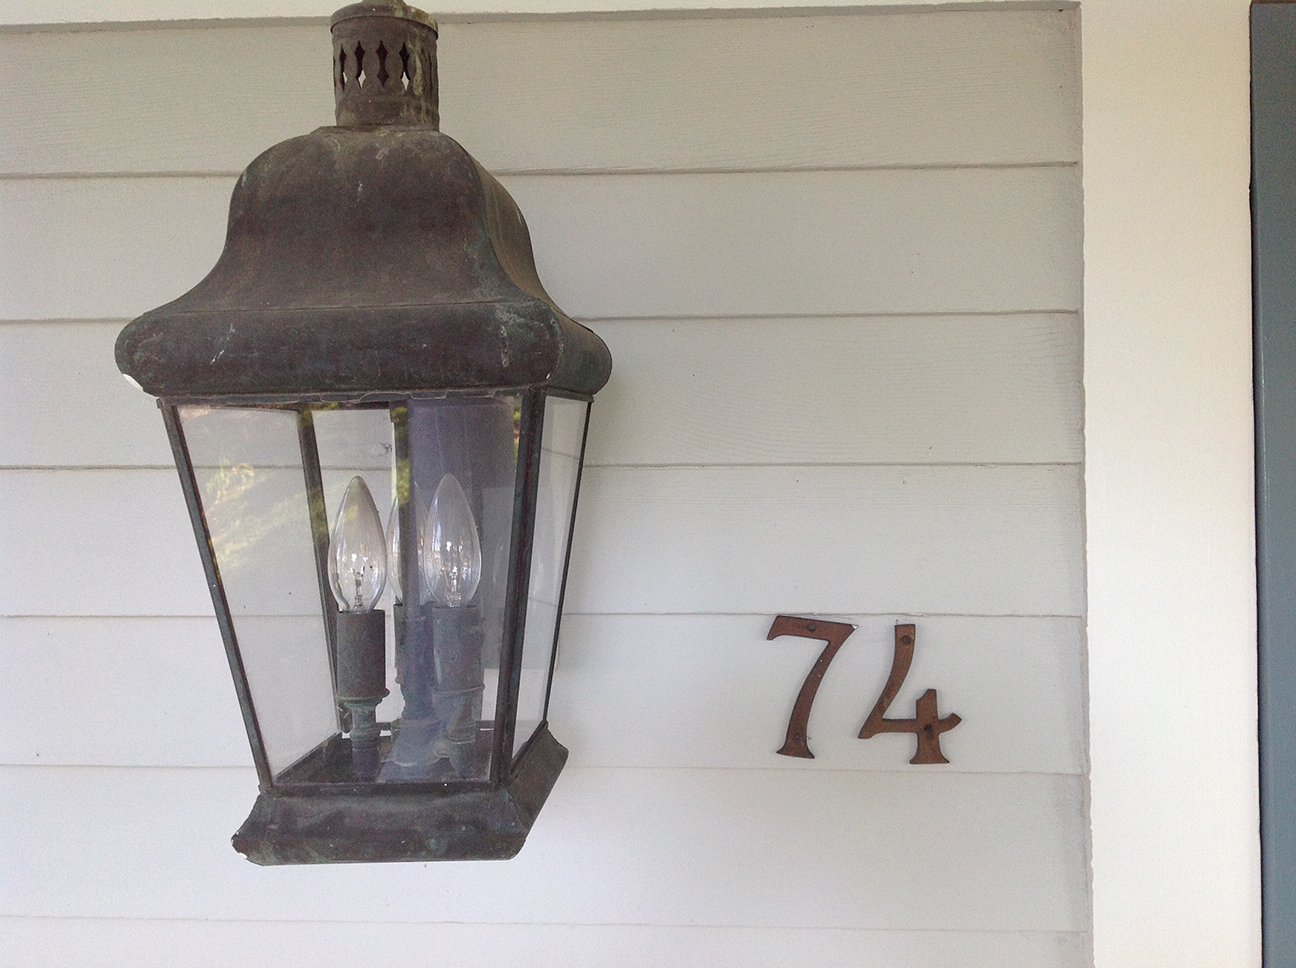 74 Rowayton Ave. (house number)